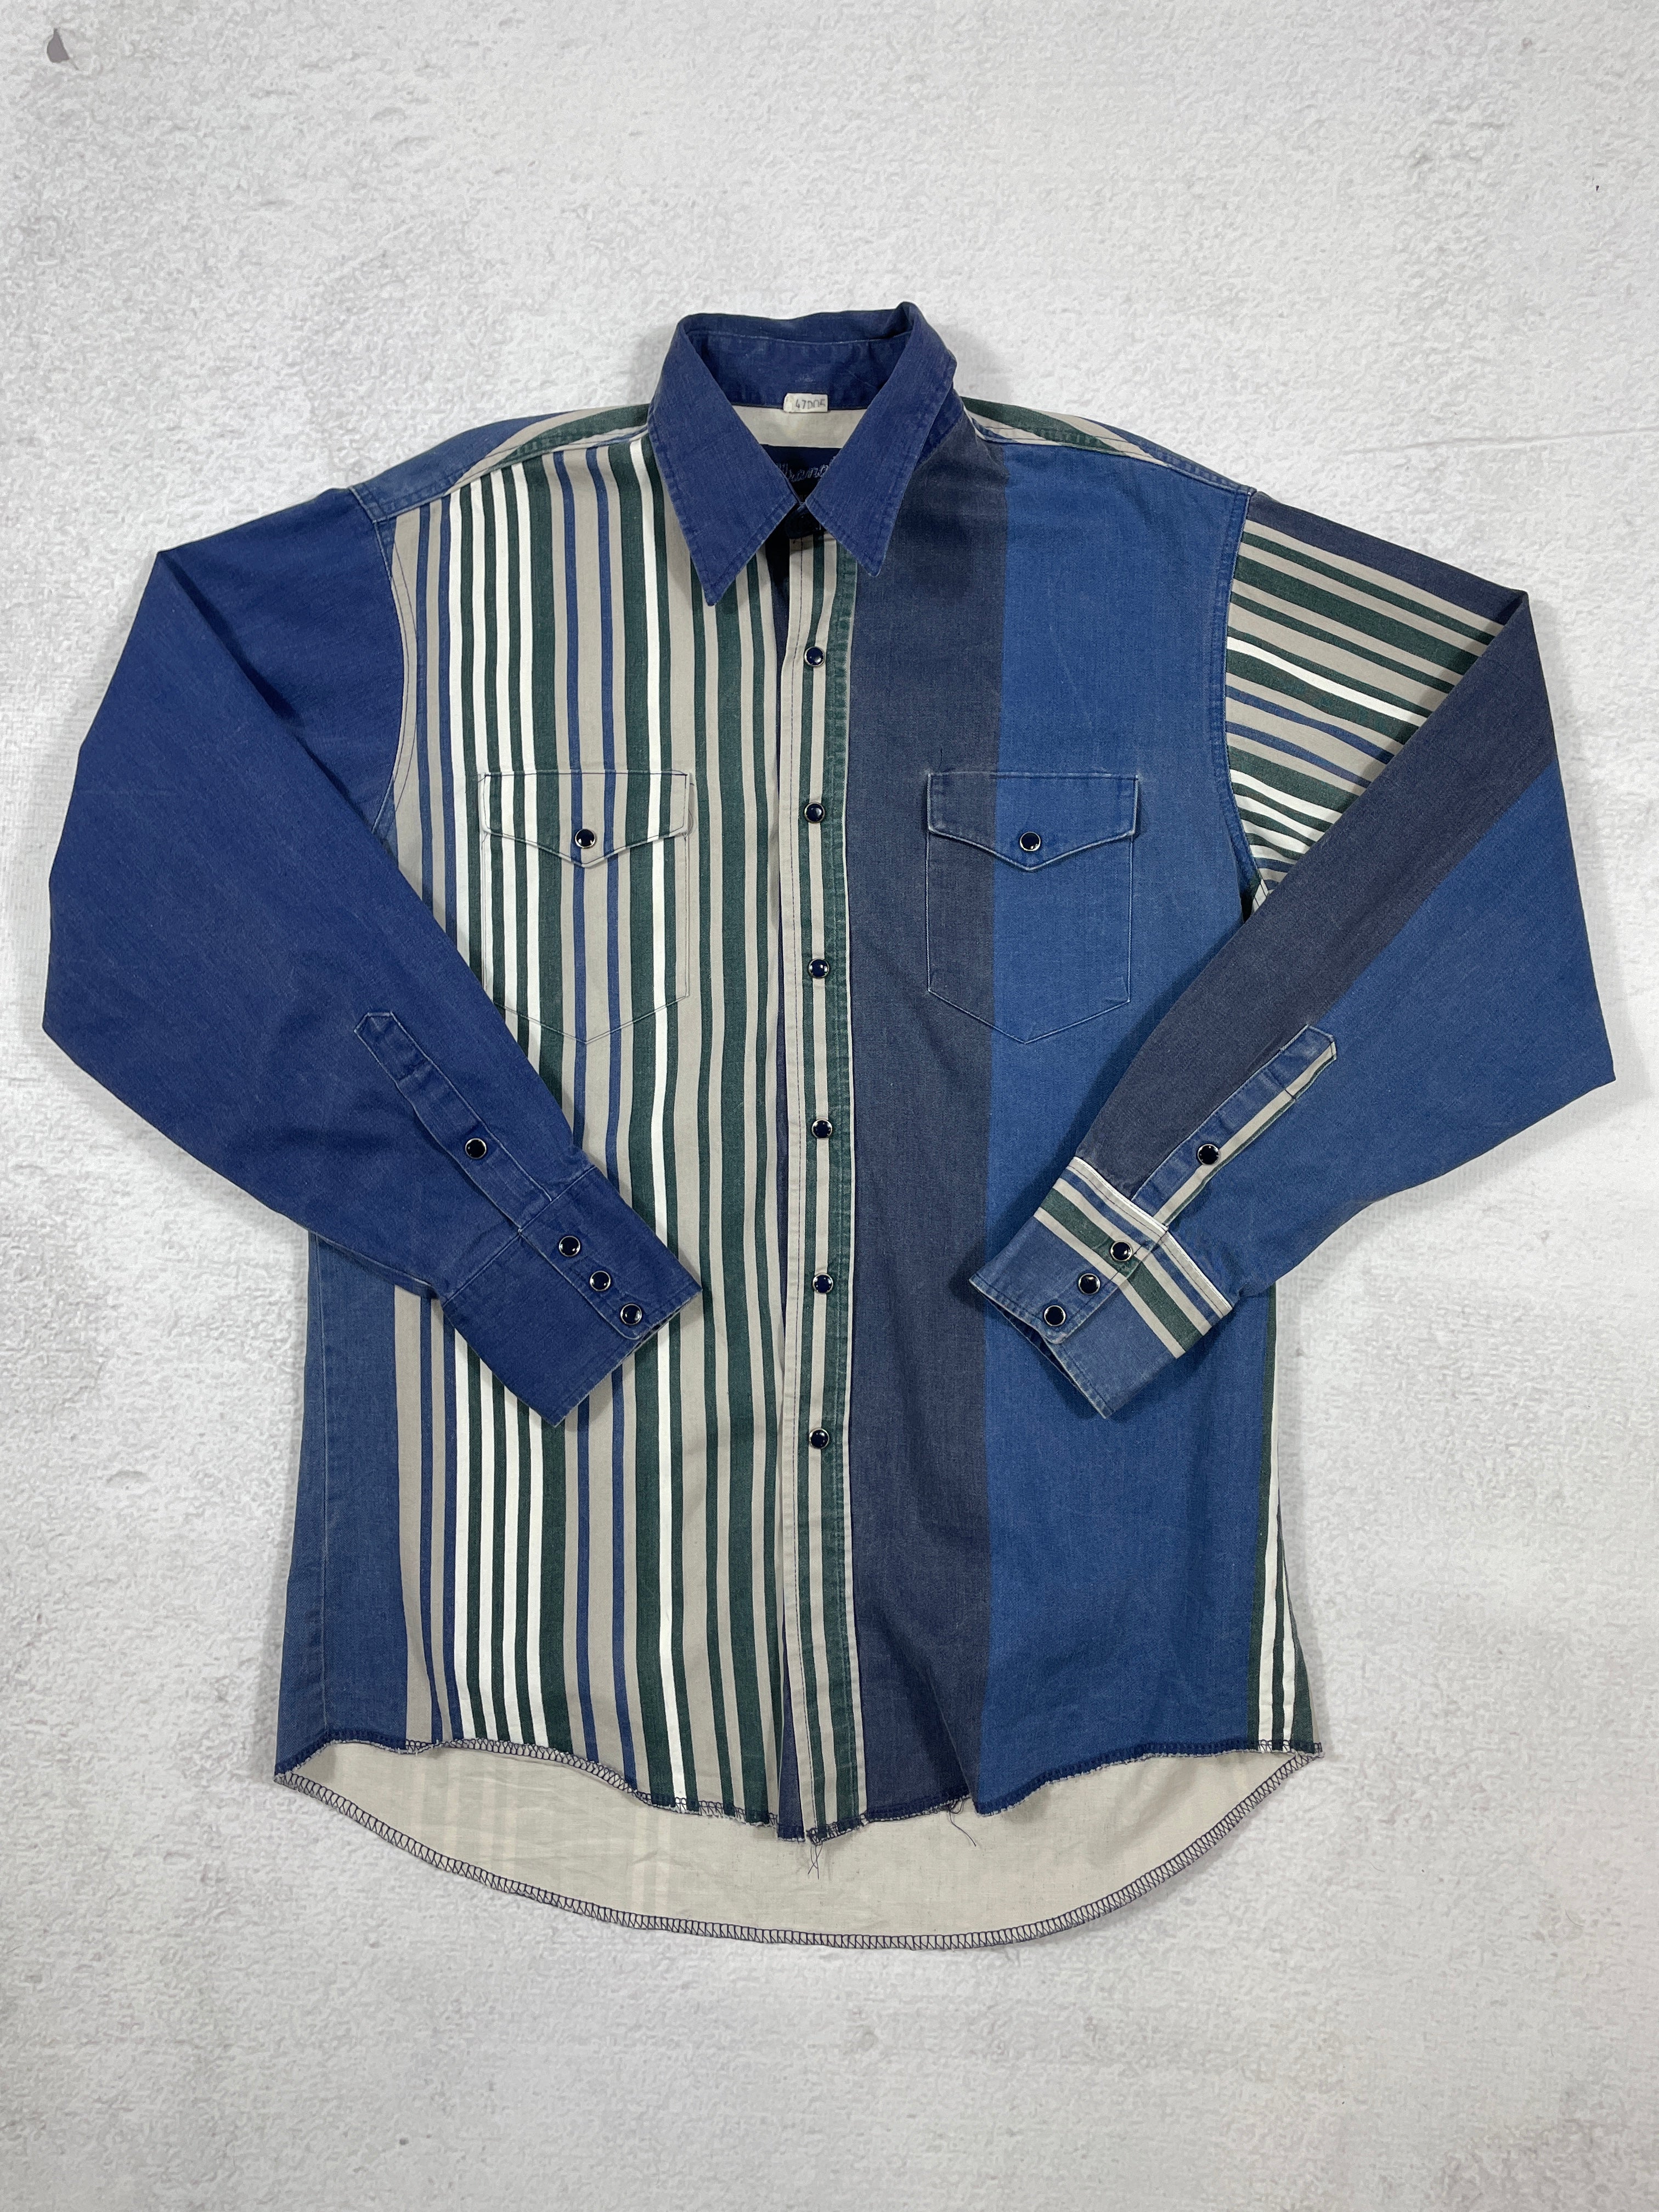 Vintage Wrangler Flannel Buttoned Shirt - Men's Large